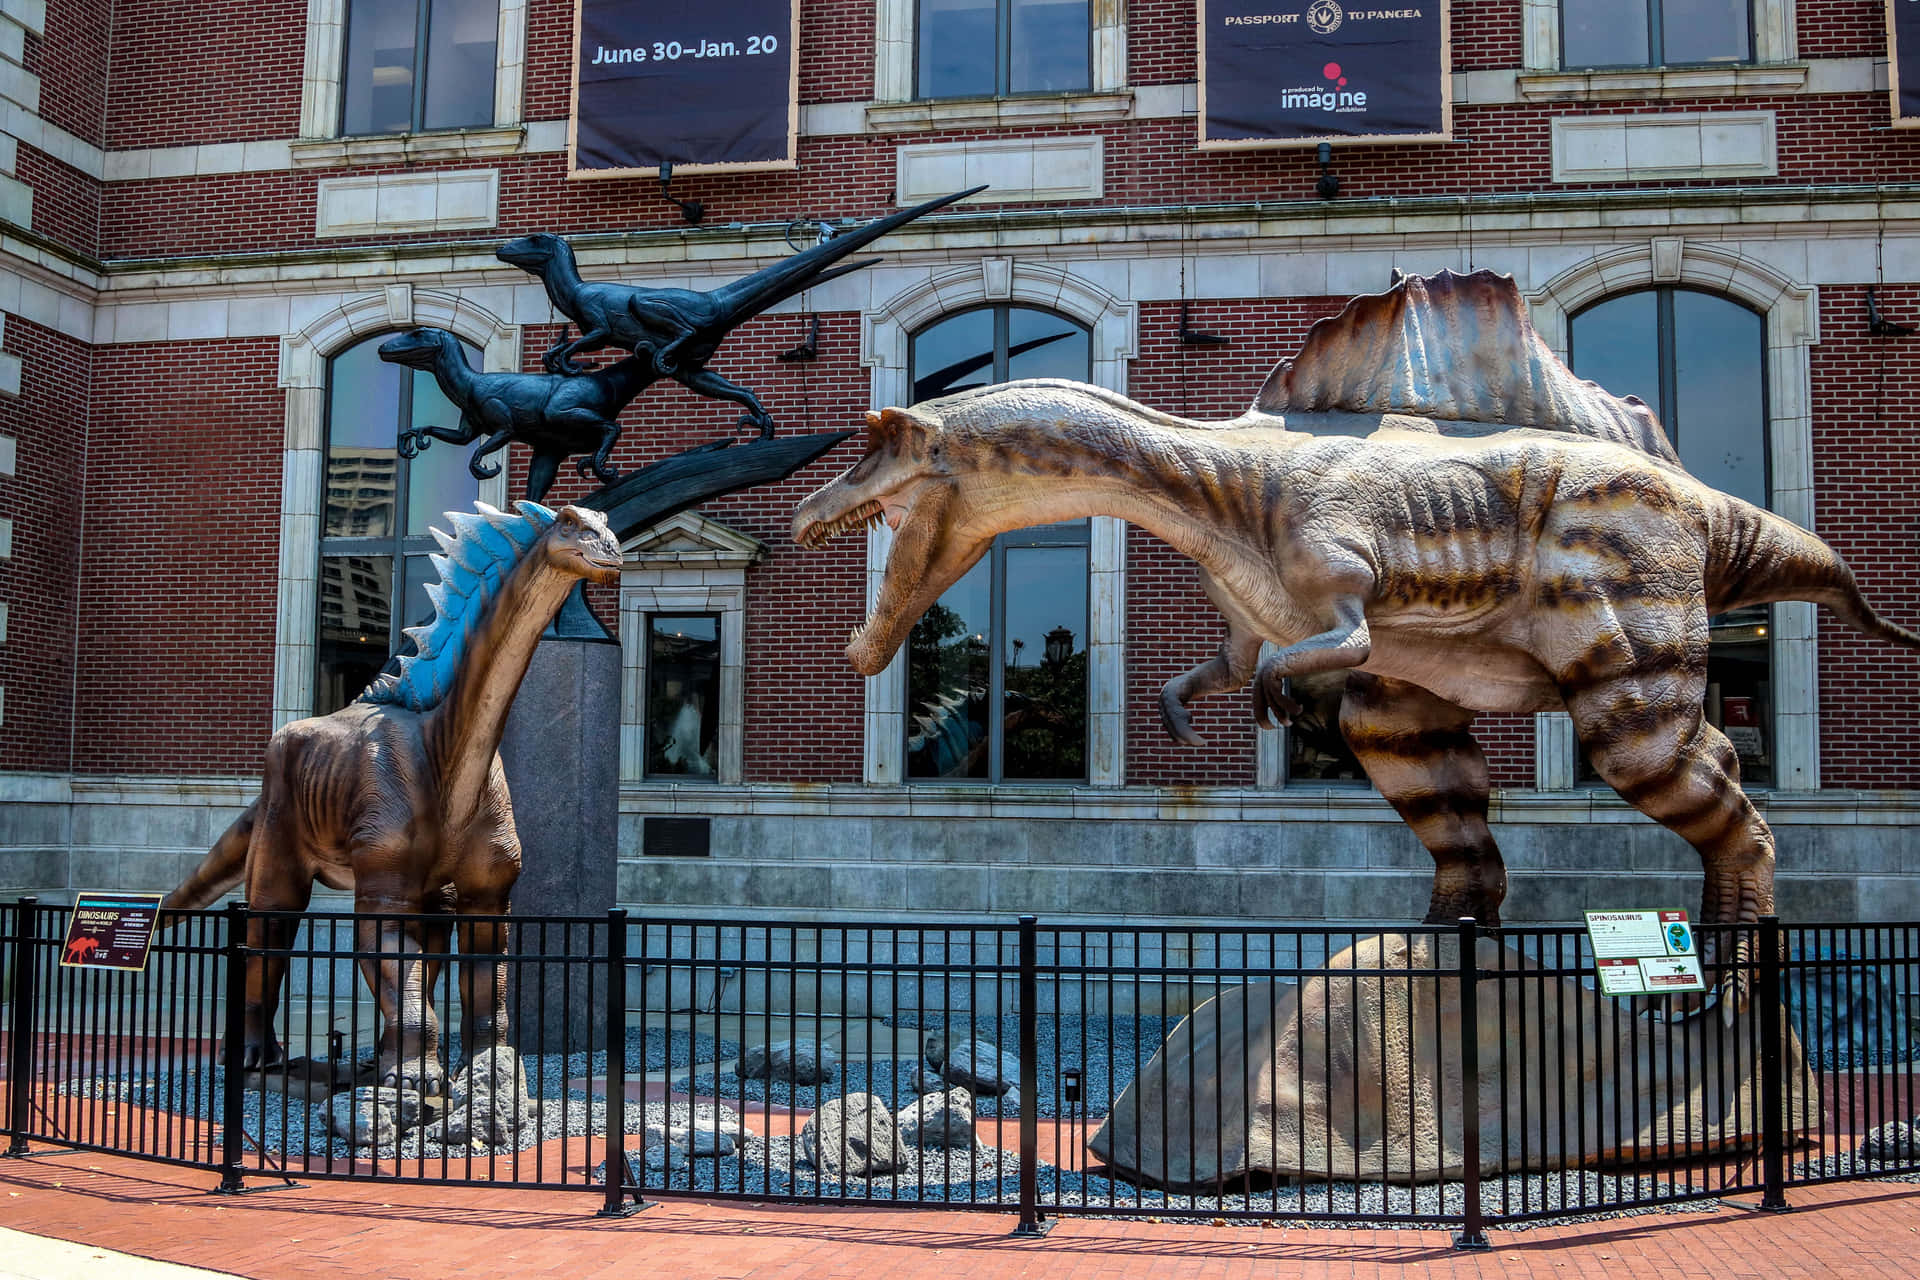 Imagende La Exhibición De Dinosaurios En Filadelfia